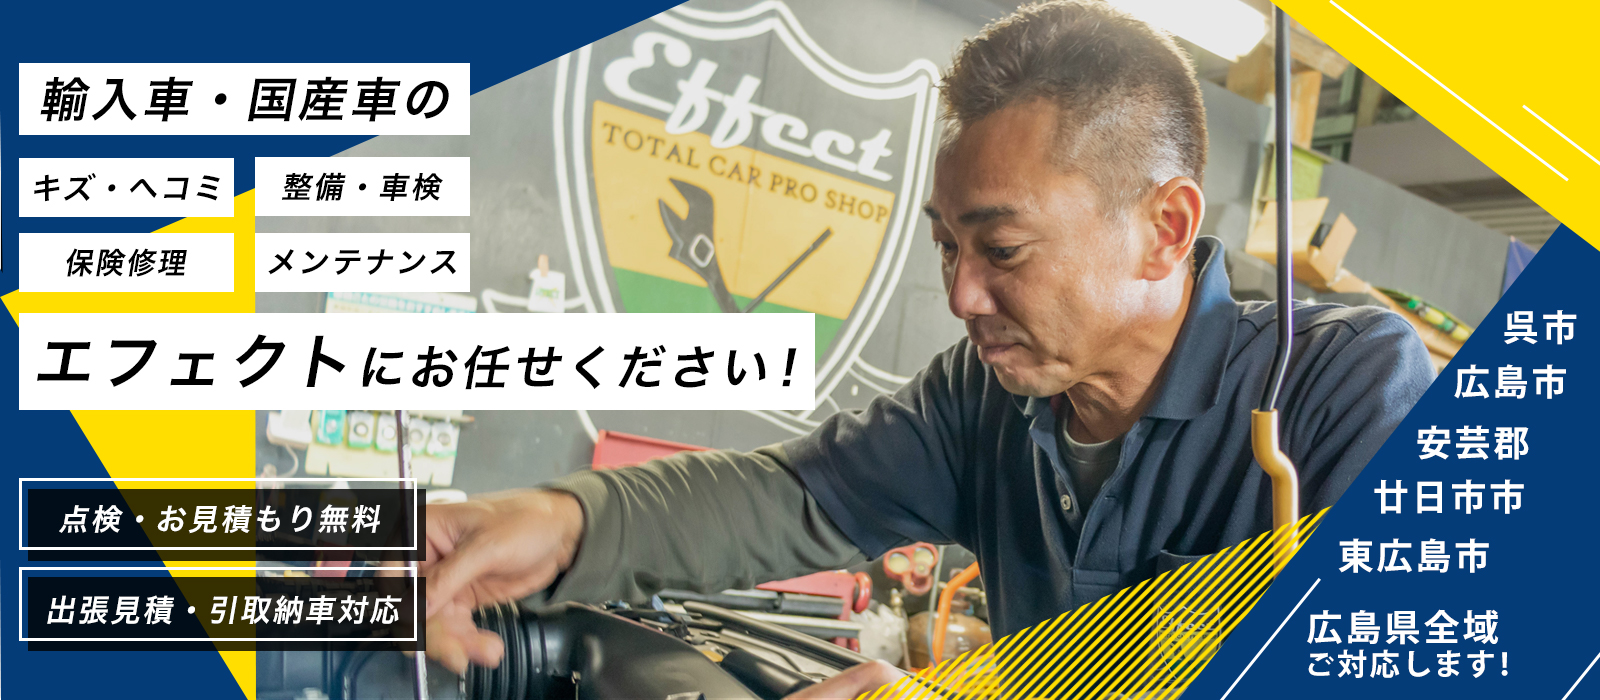 エフェクト| あらゆる国産・輸入車の整備・車検・修理は広島県広島市・エフェクトにお任せください